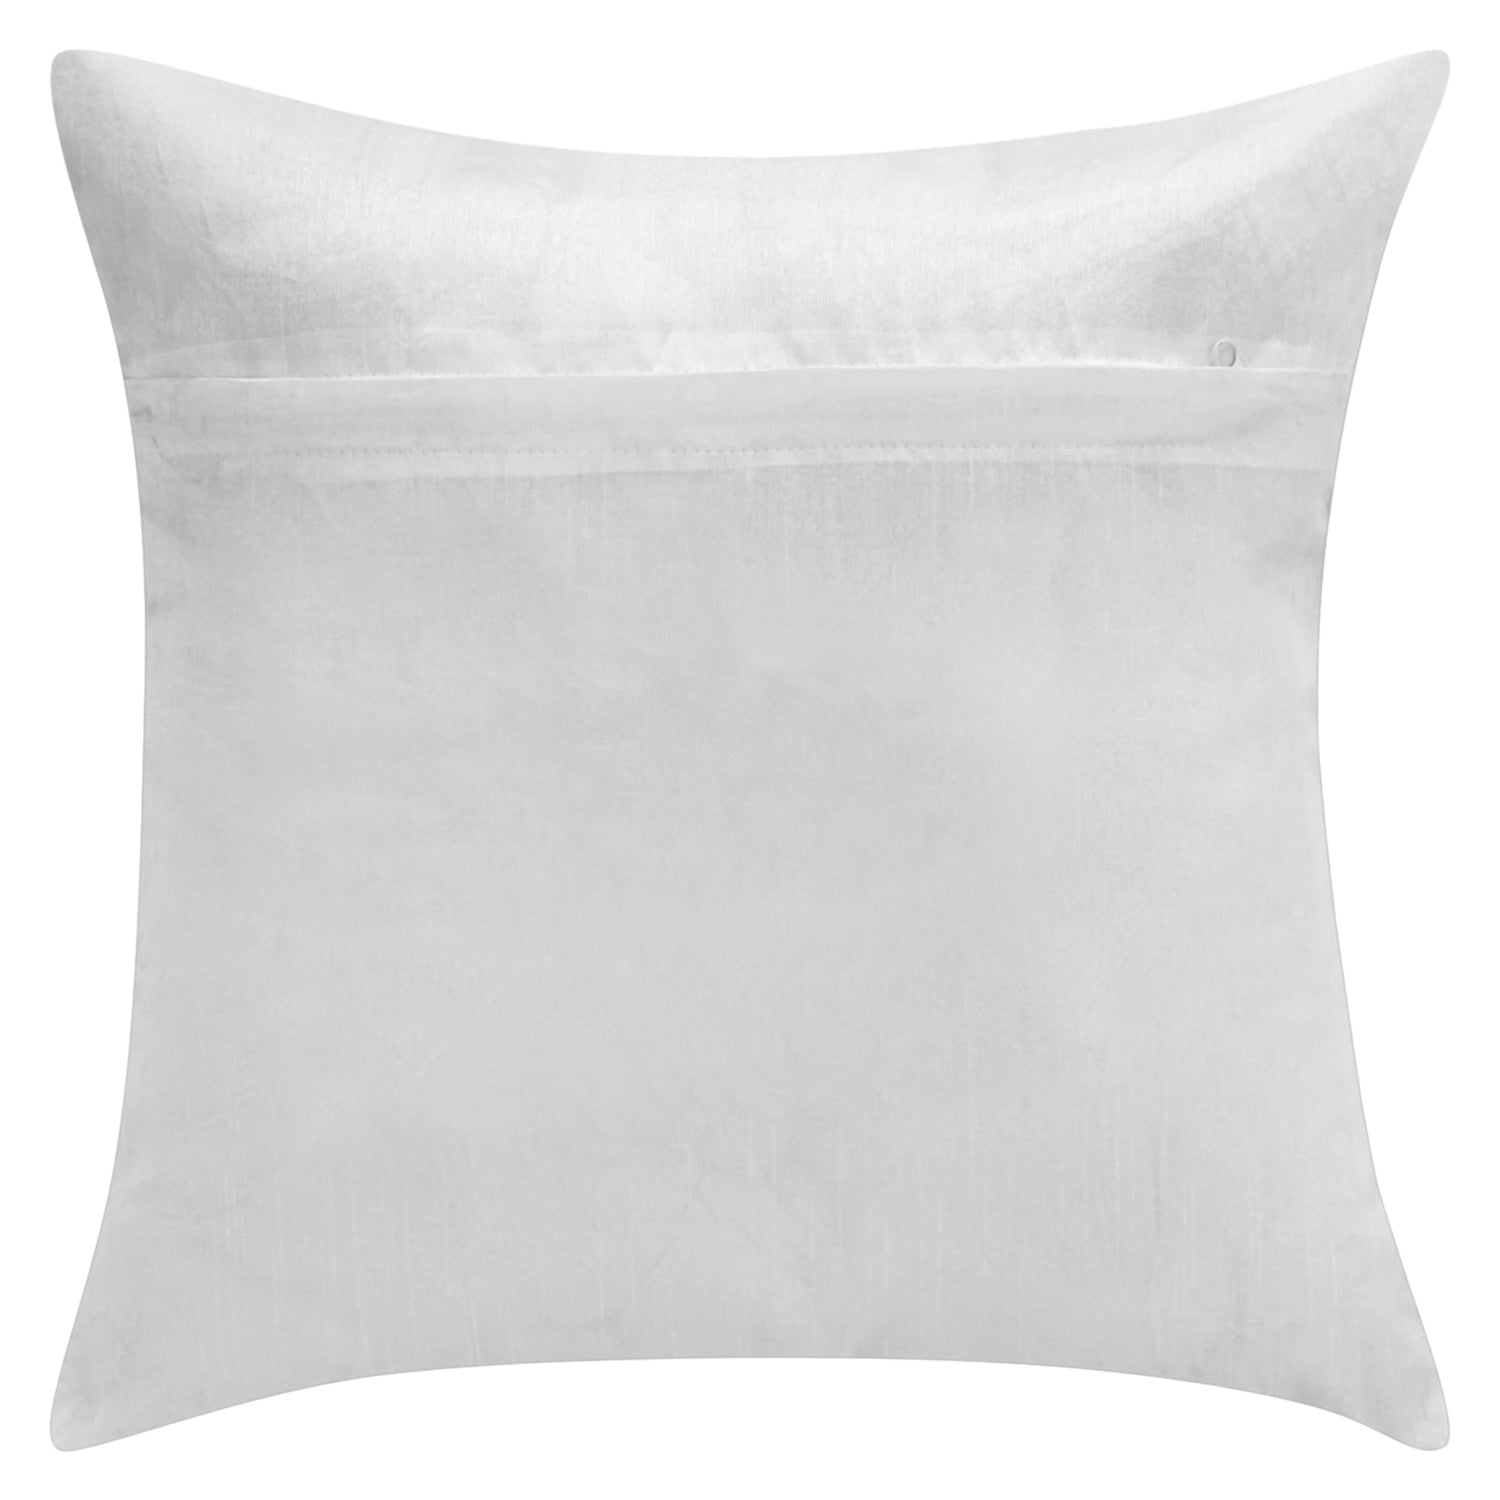 Desi Kapda 3D Printed Cushions & Pillows CoverDesi Kapda 3D Printed Cushions & Pillows Cover